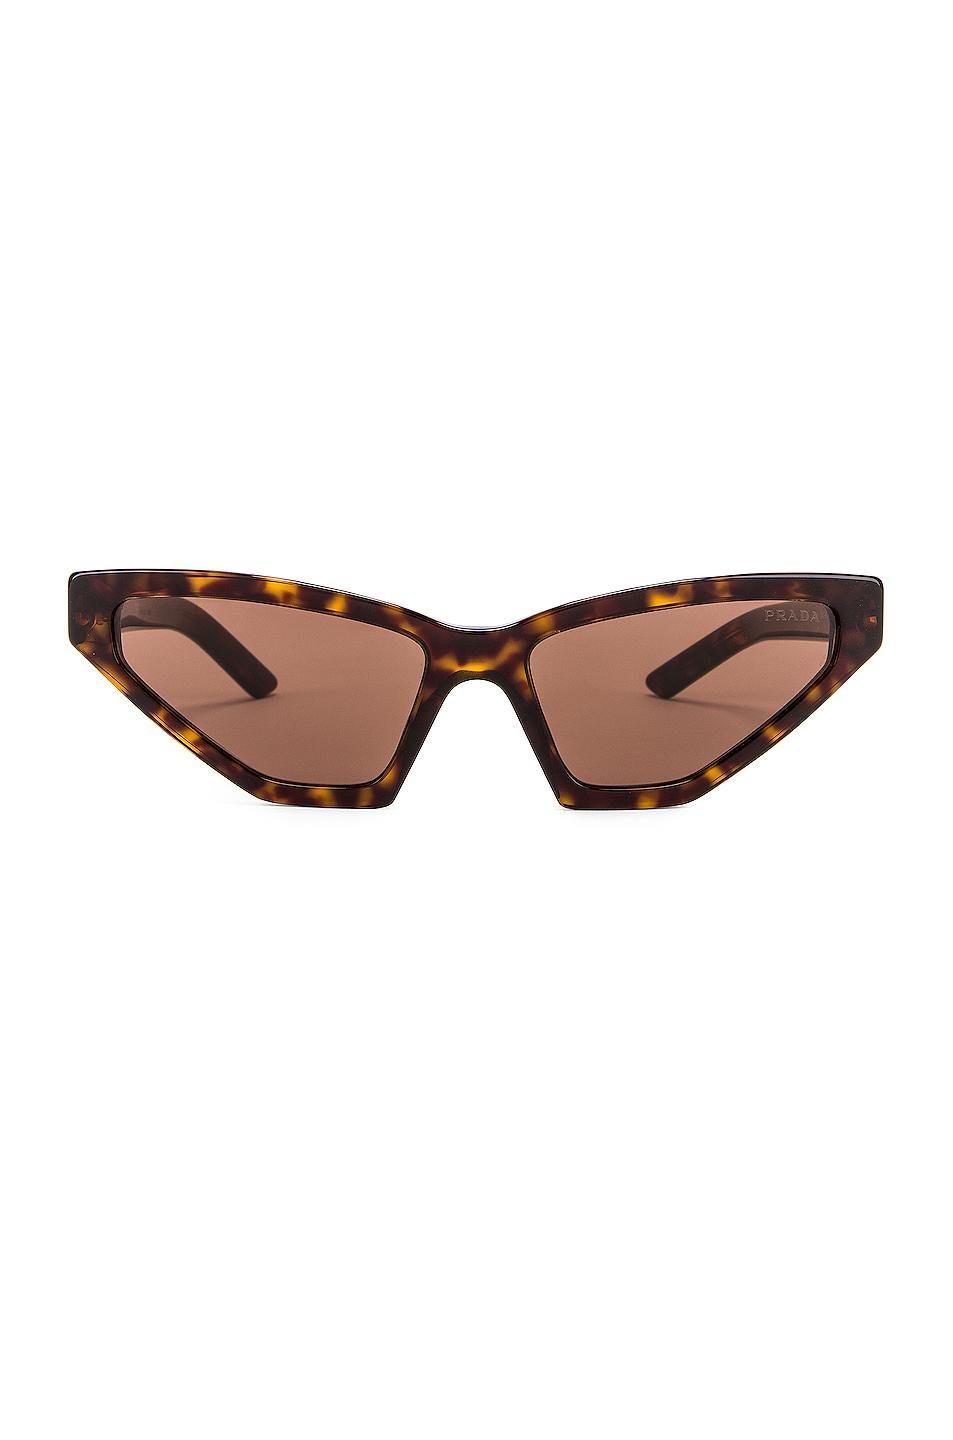 Prada Skinny Sunglasses in Brown - Lyst